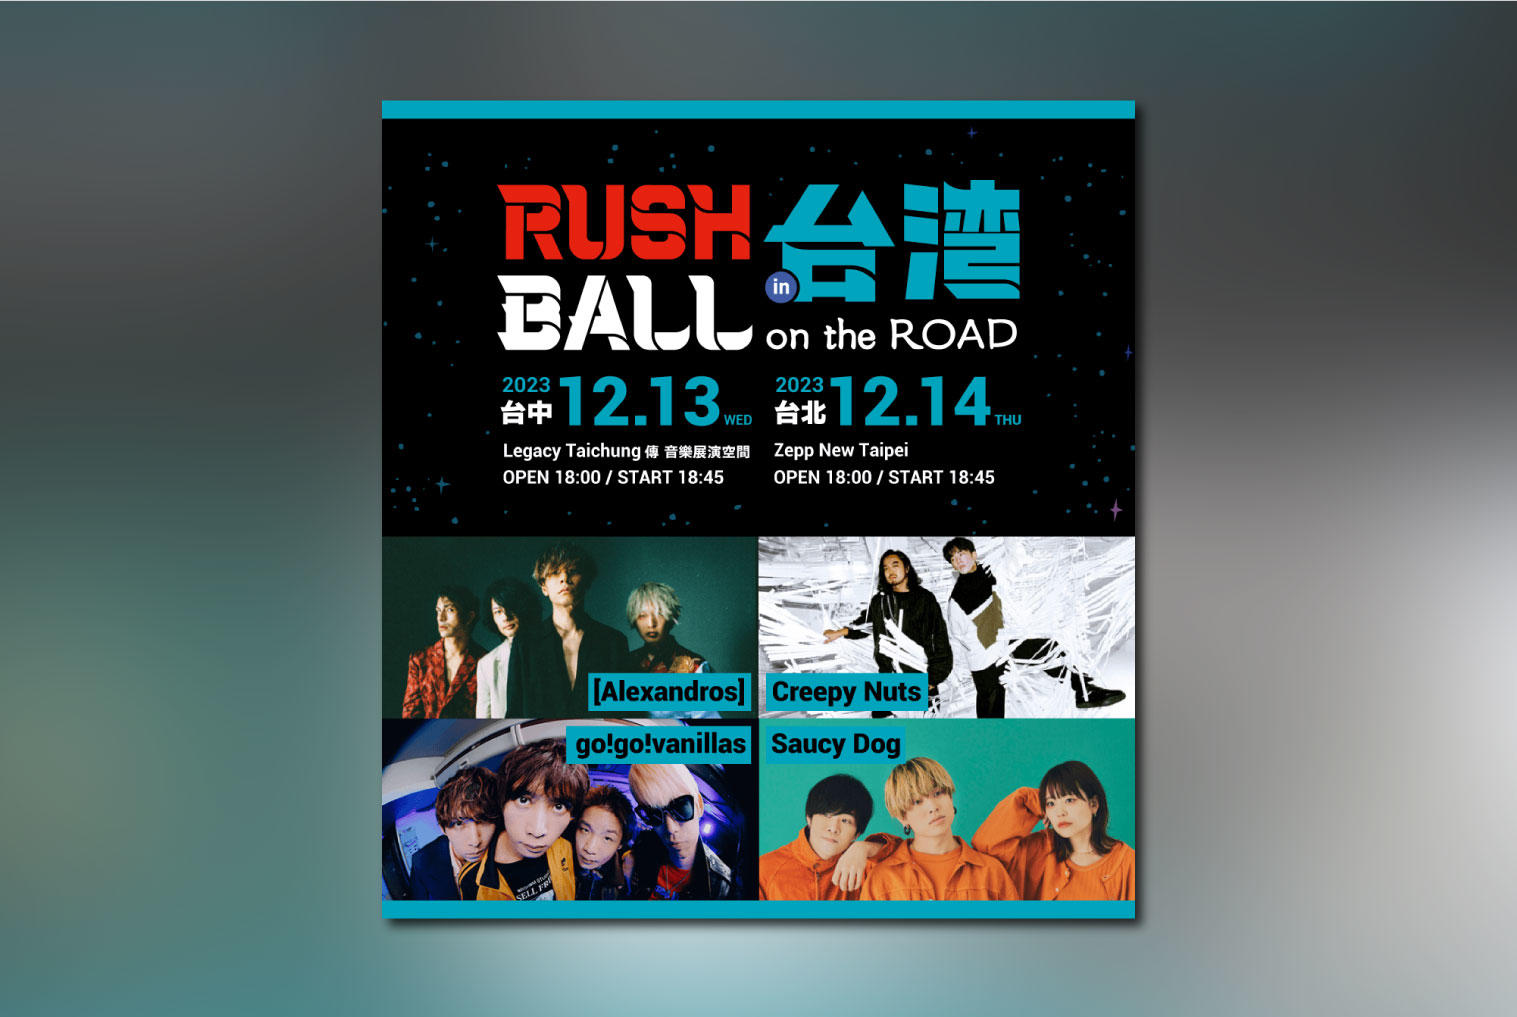 RUSH BALL in 台湾 on the ROAD開催。出演アーティストによるコメント&プレイリスト公開！